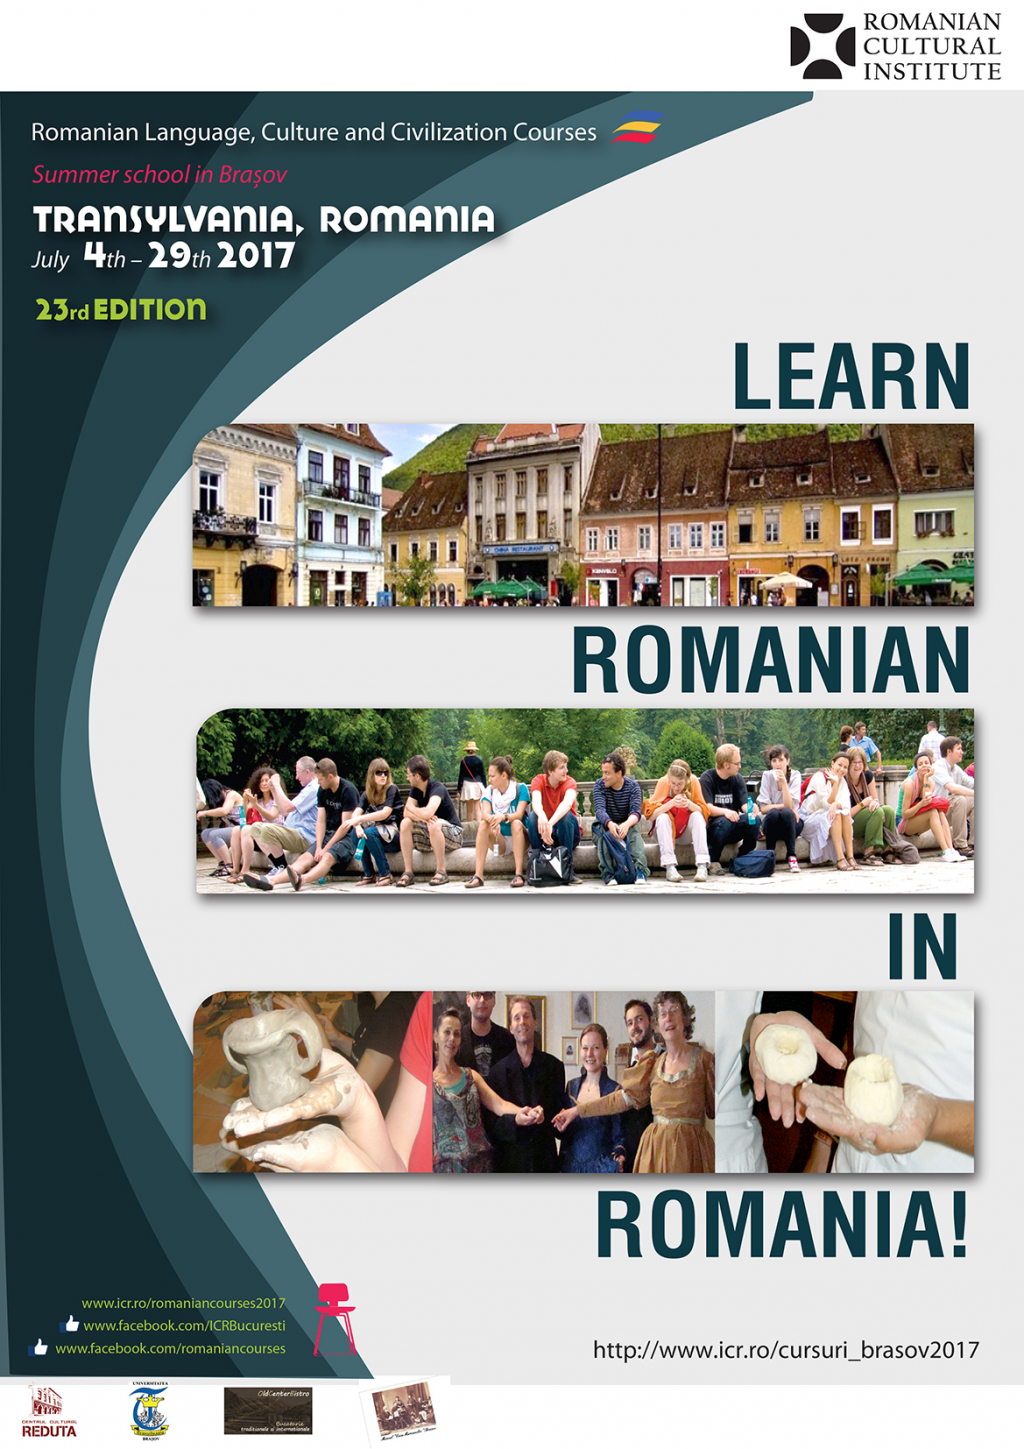 invatati limba romana in Romania! 